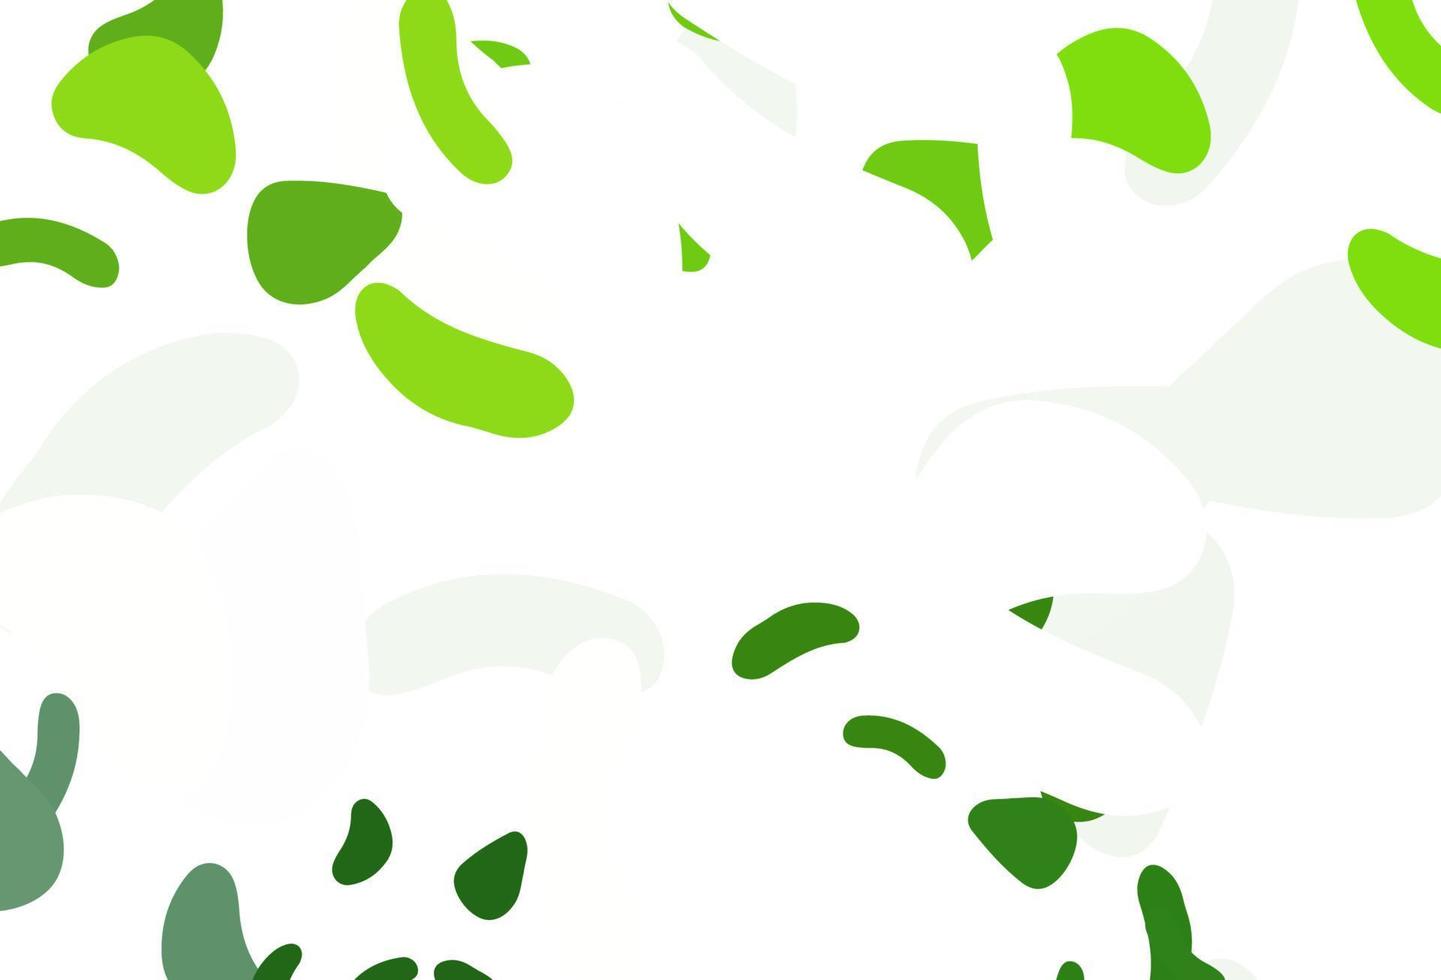 texture vettoriale verde chiaro con forme casuali.